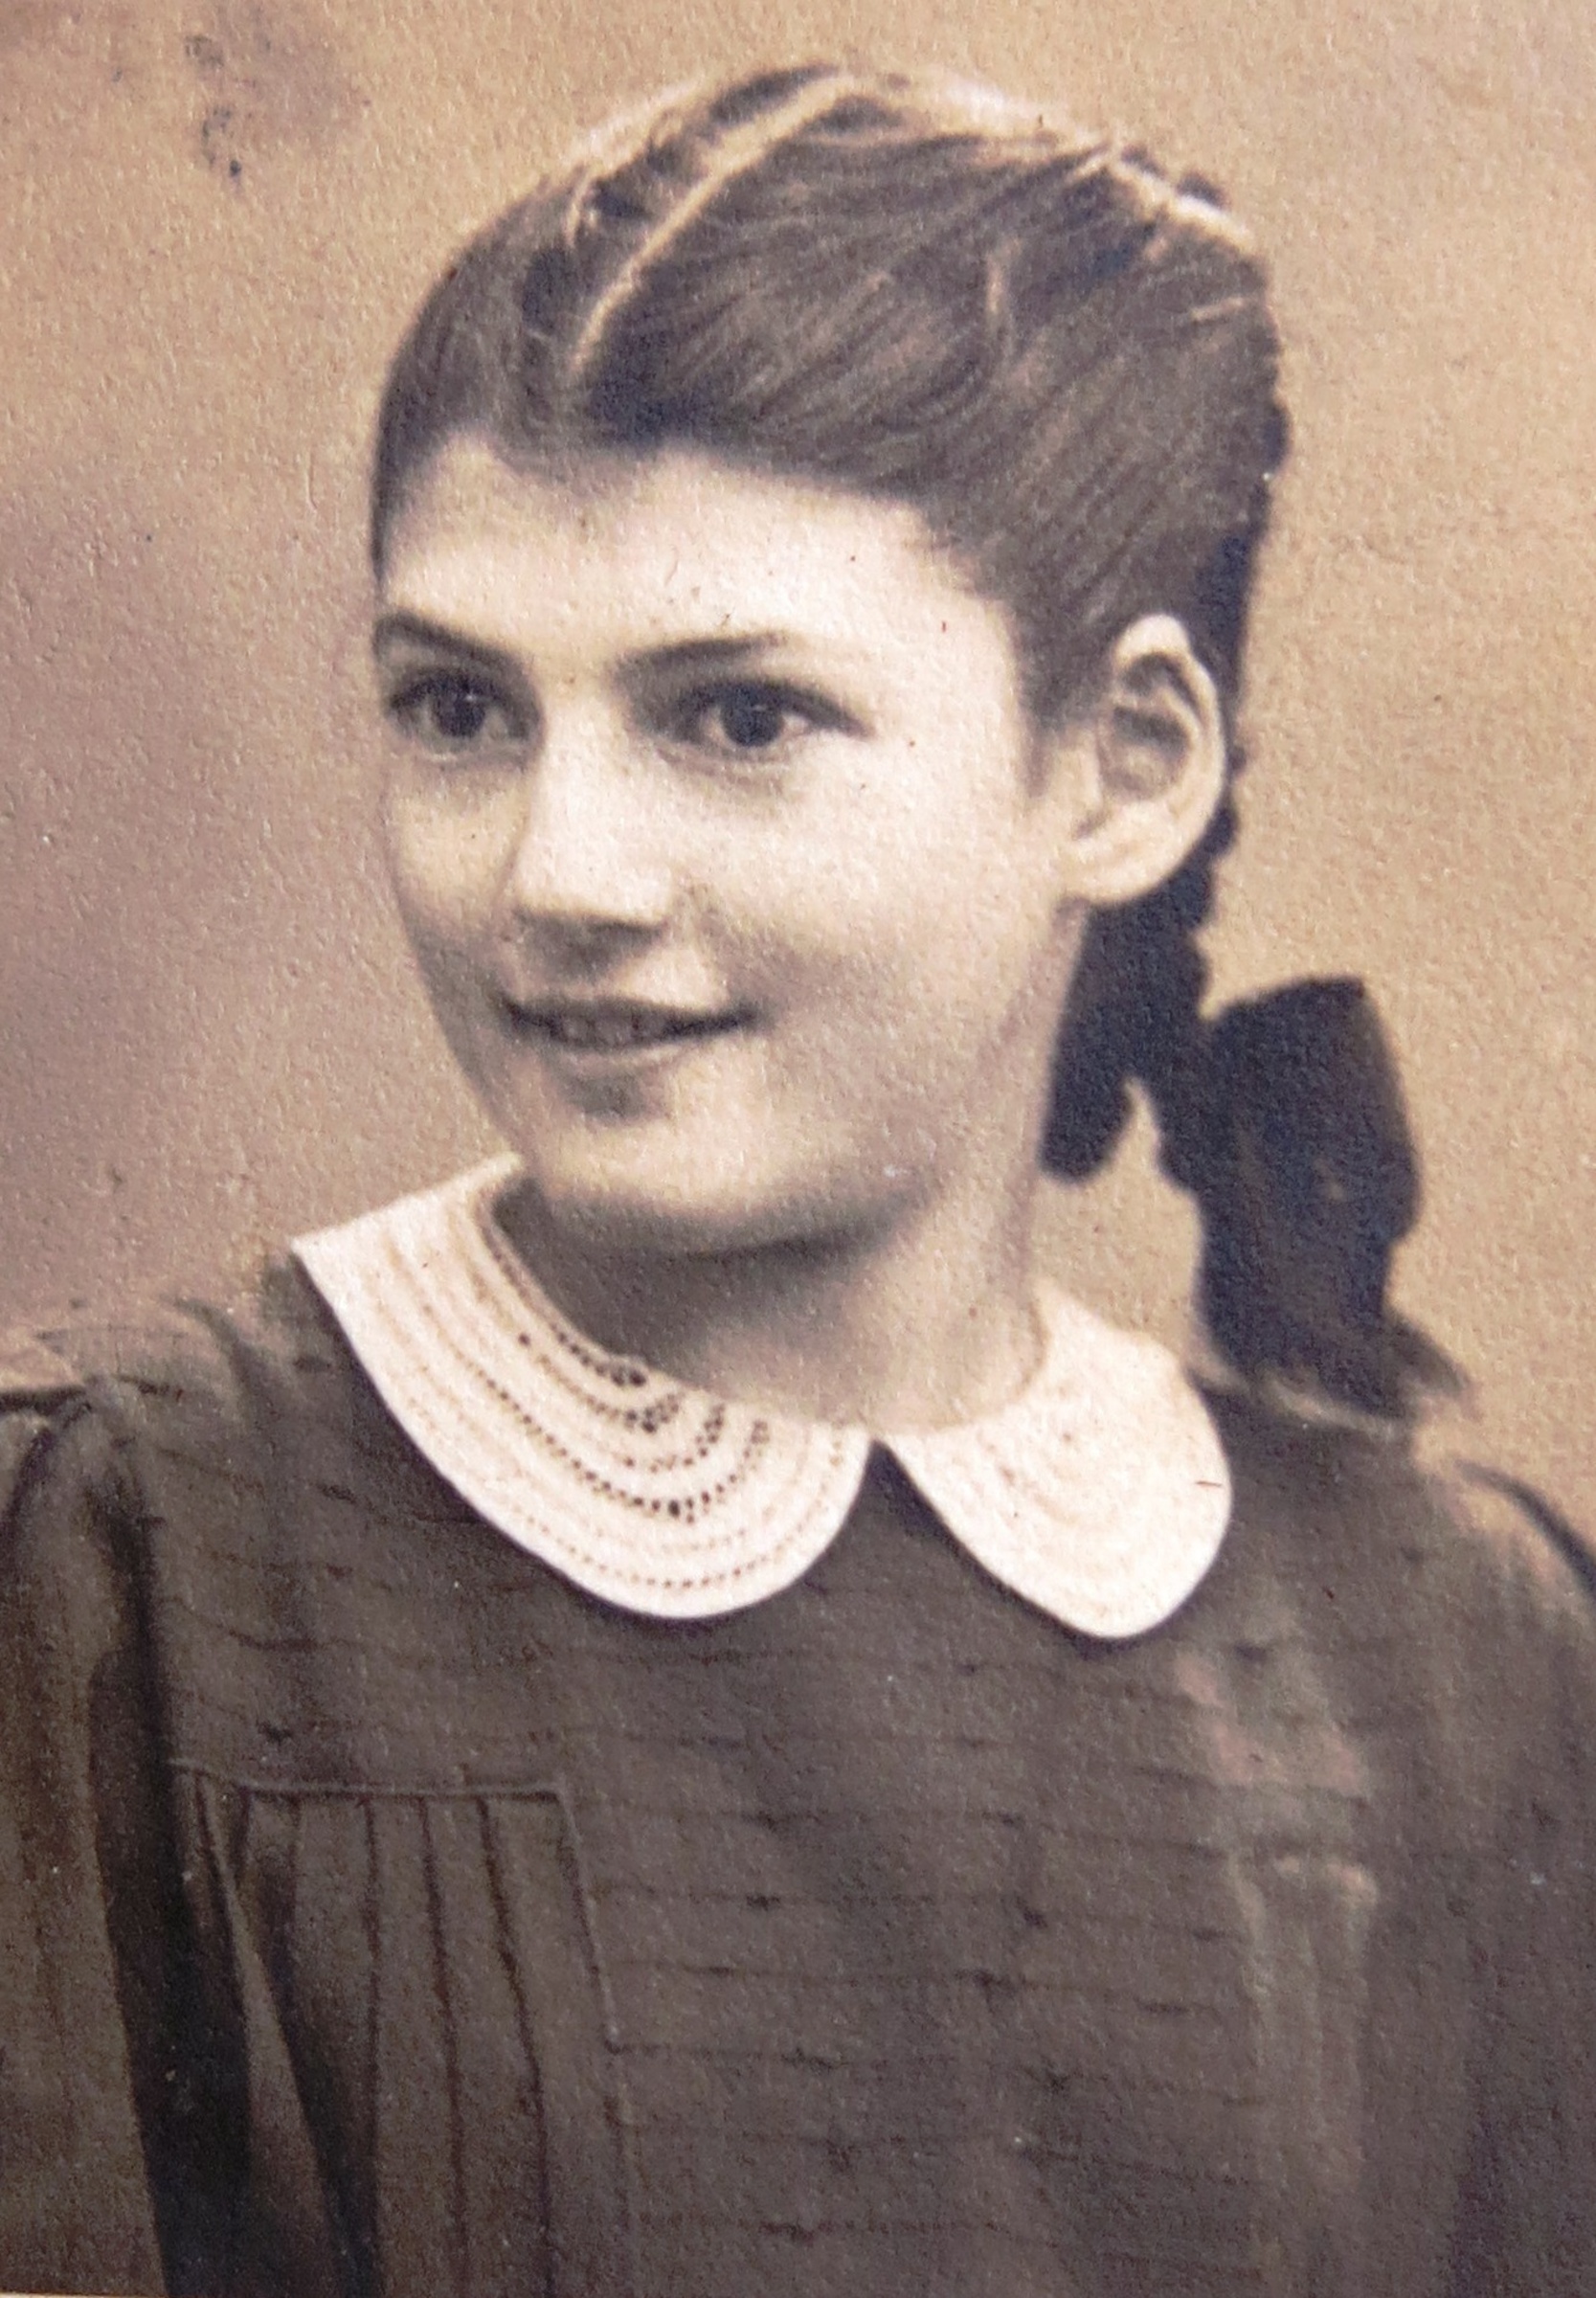 Judith Marosi, Bat micva, 1941